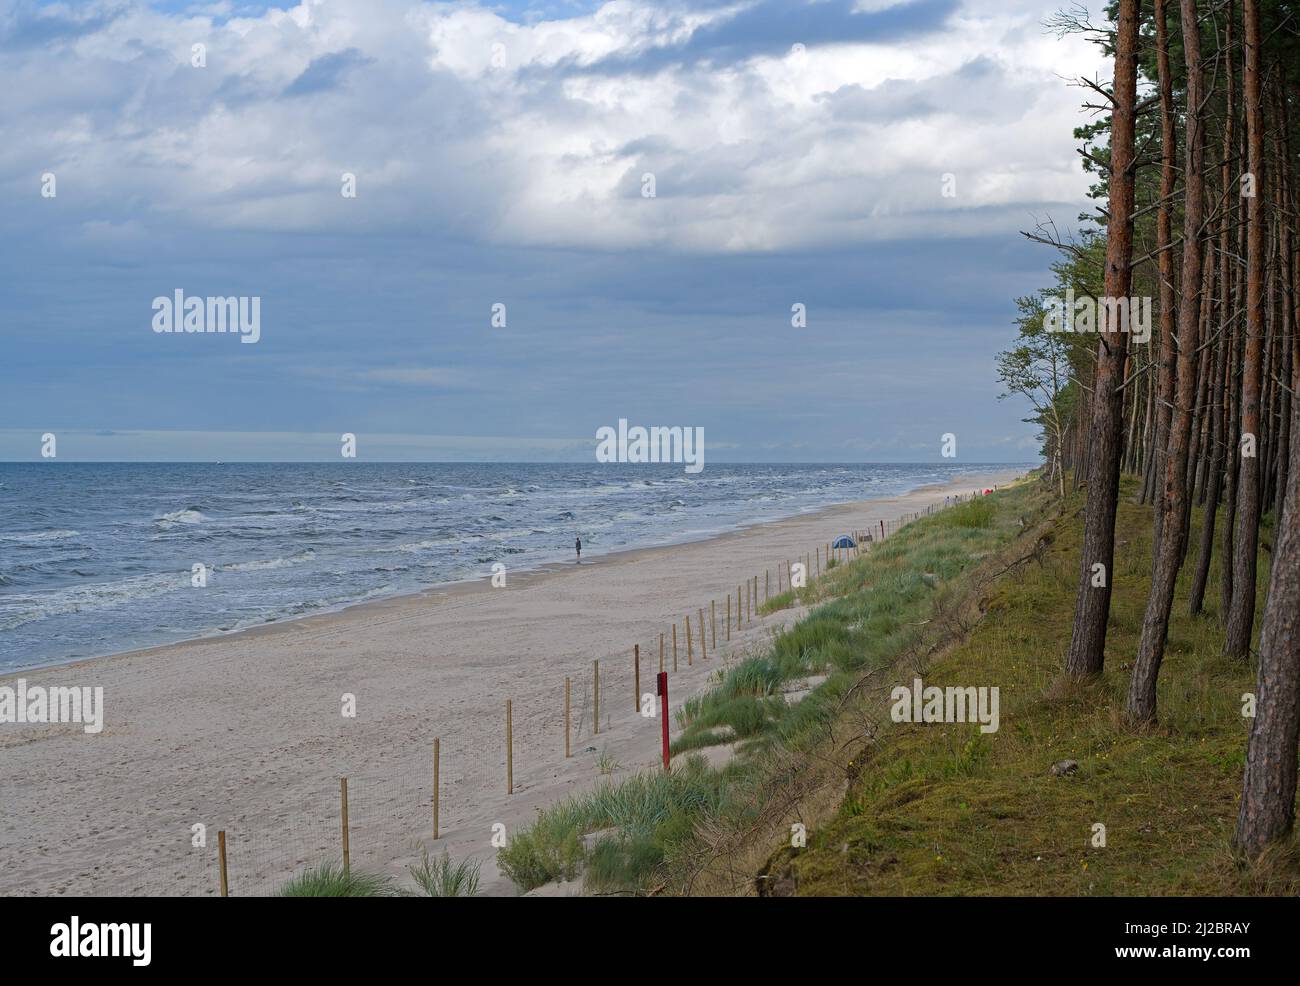 Empinada orilla y bosque de pinos en la playa de la costa del Mar Báltico, Polonia. Foto de stock